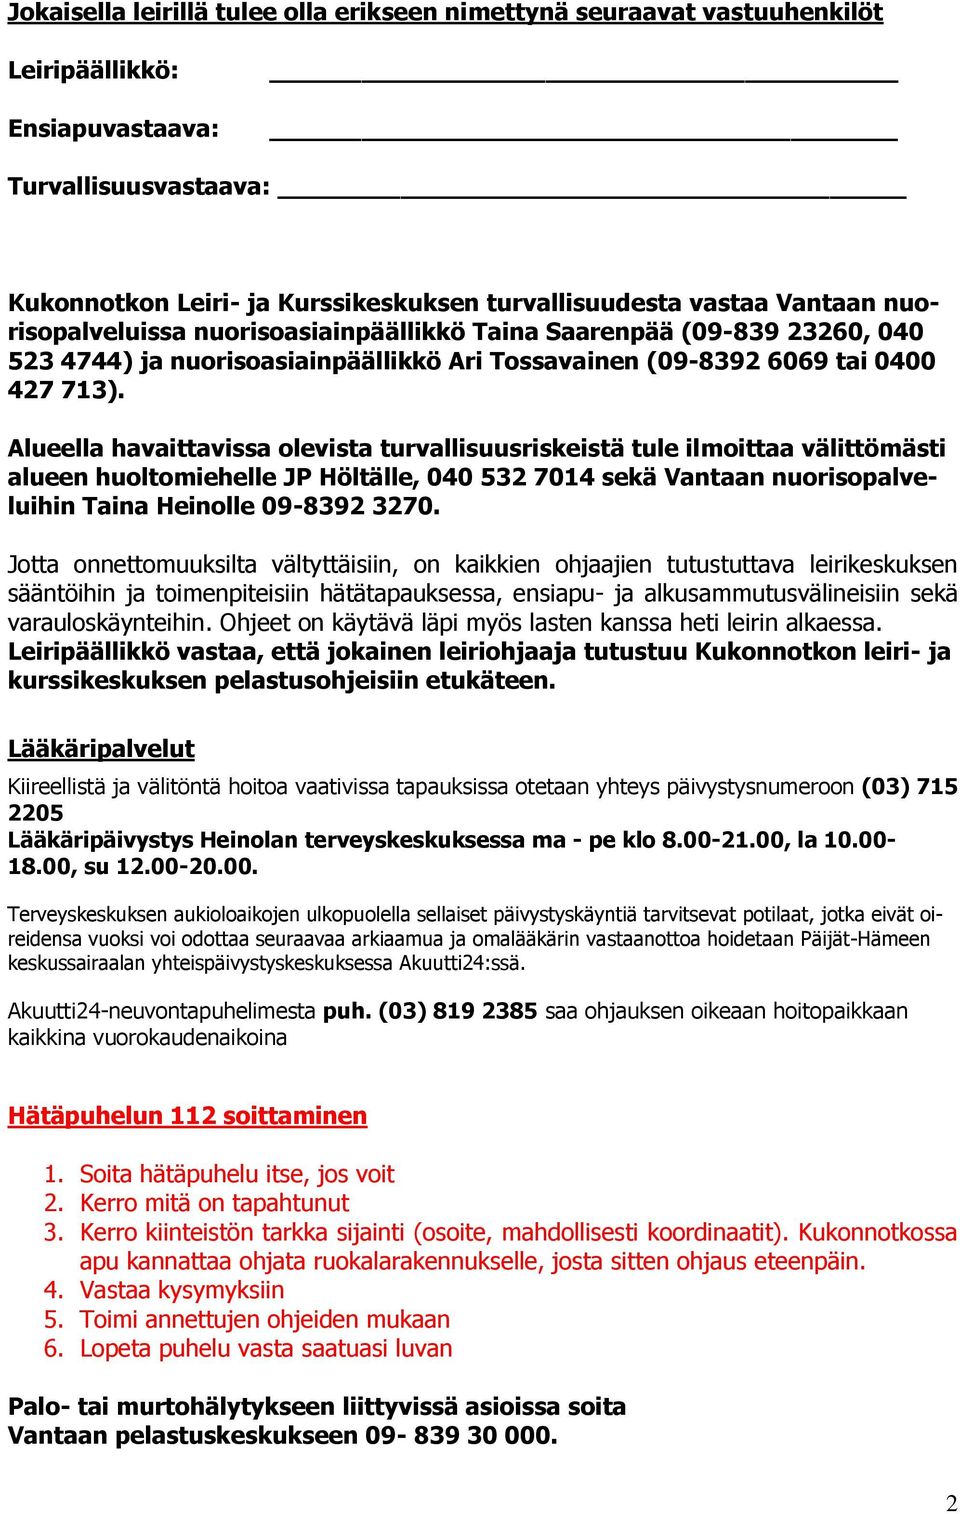 Alueella havaittavissa olevista turvallisuusriskeistä tule ilmoittaa välittömästi alueen huoltomiehelle JP Höltälle, 040 532 7014 sekä Vantaan nuorisopalveluihin Taina Heinolle 09-8392 3270.